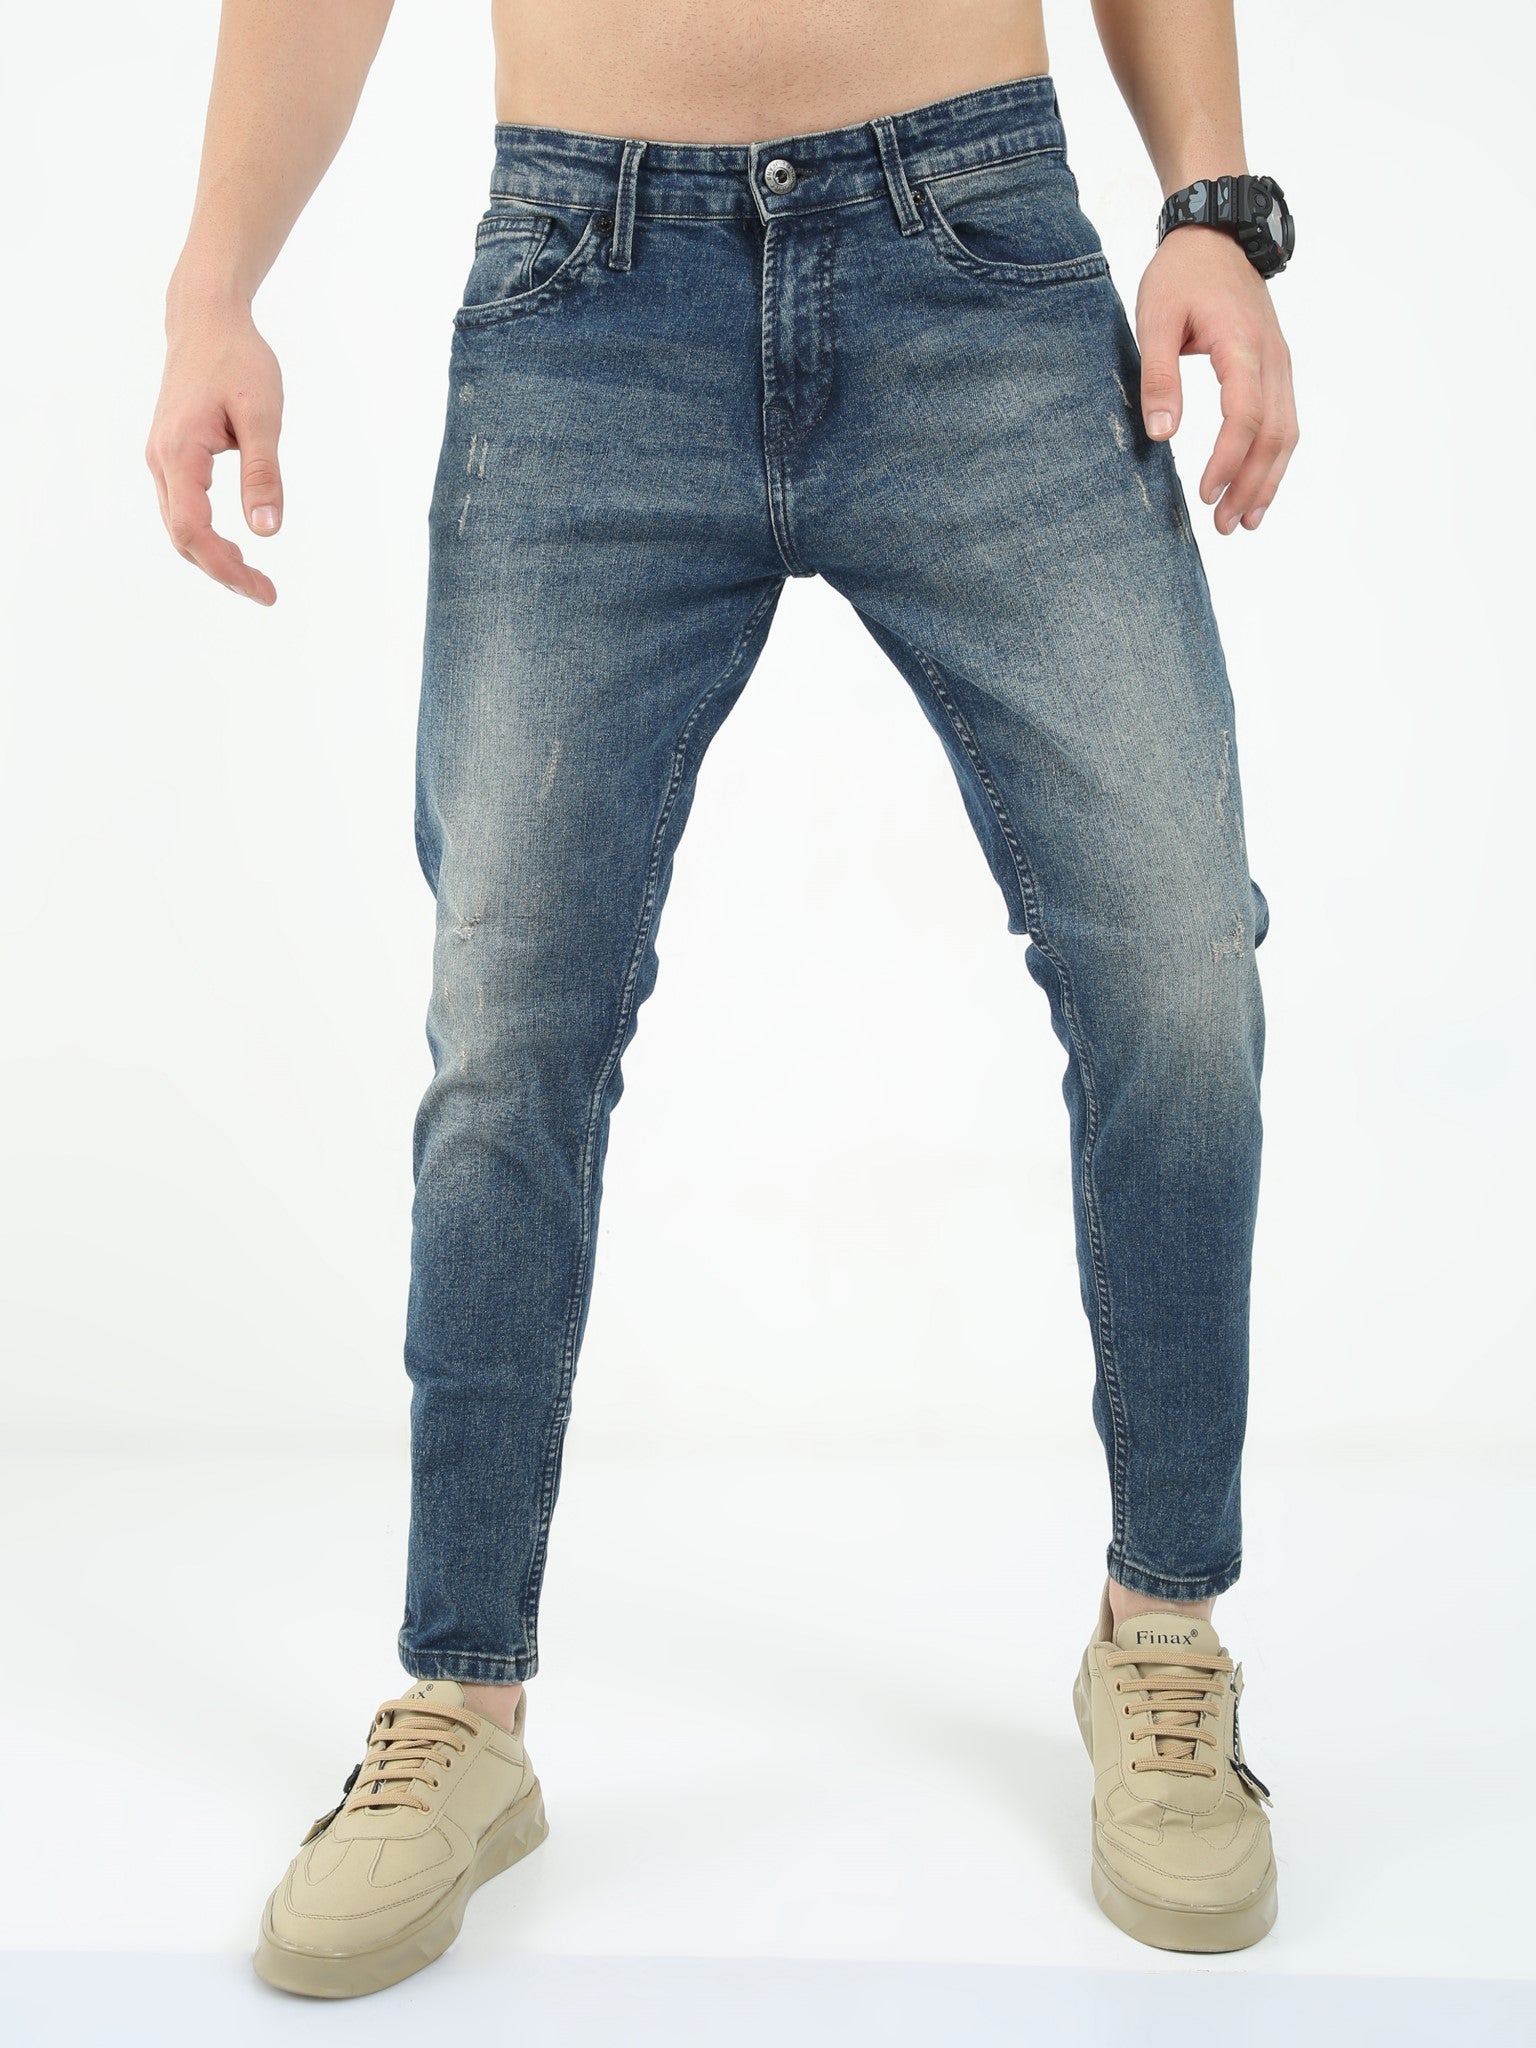 Atlantic Blue Skinny Jeans for Men 